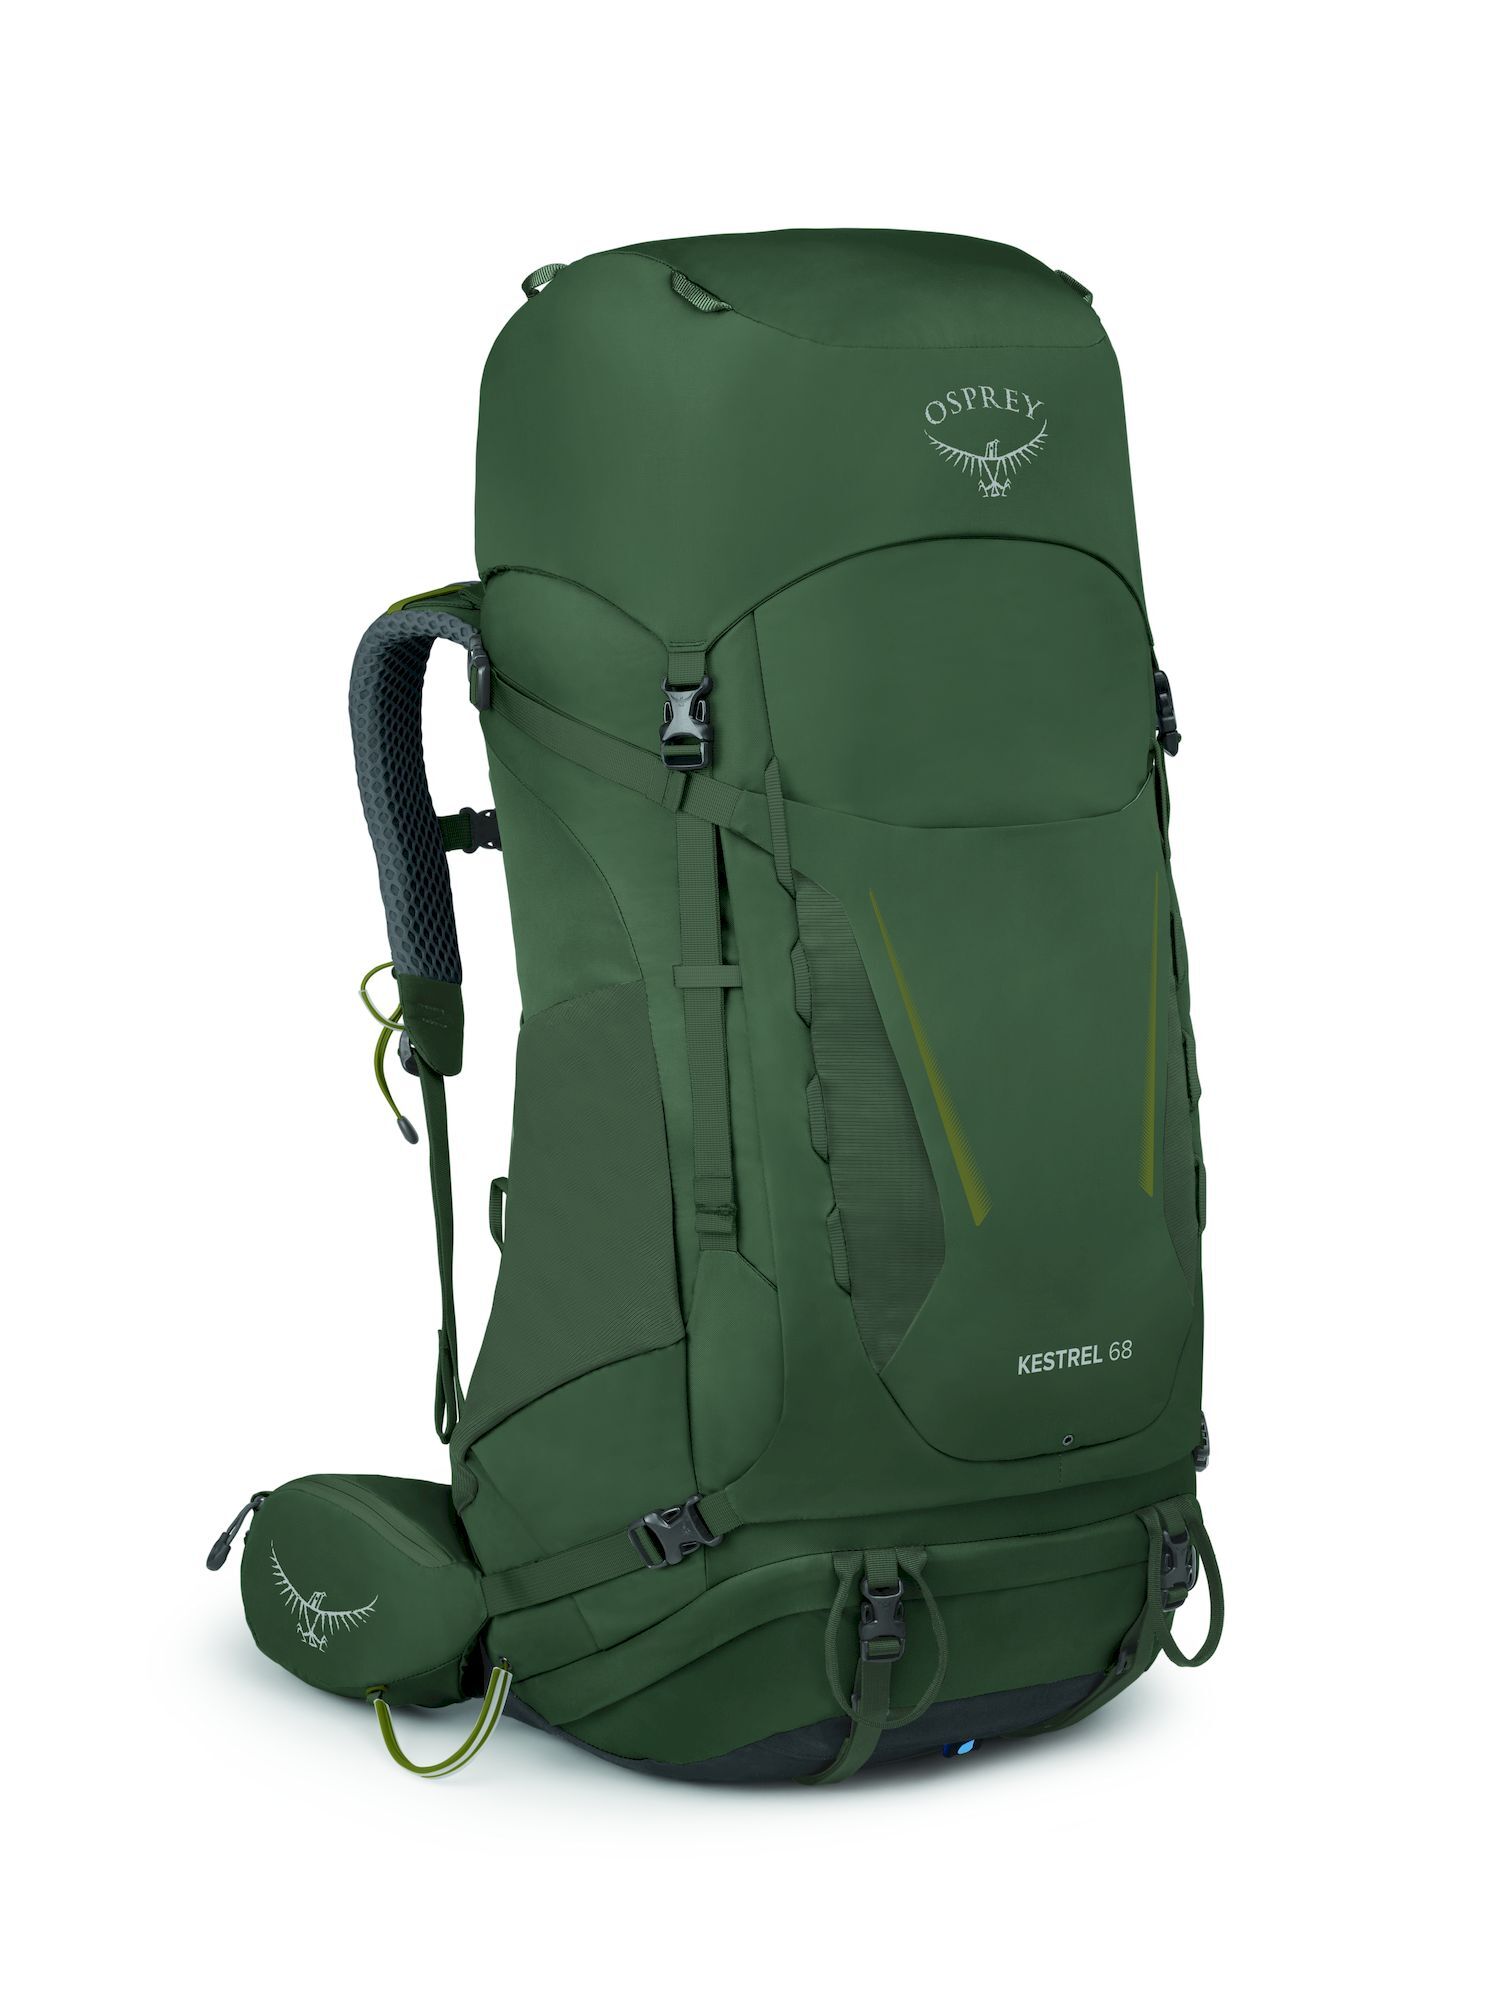 Osprey Kestrel 68 - Hiking backpack - Men's